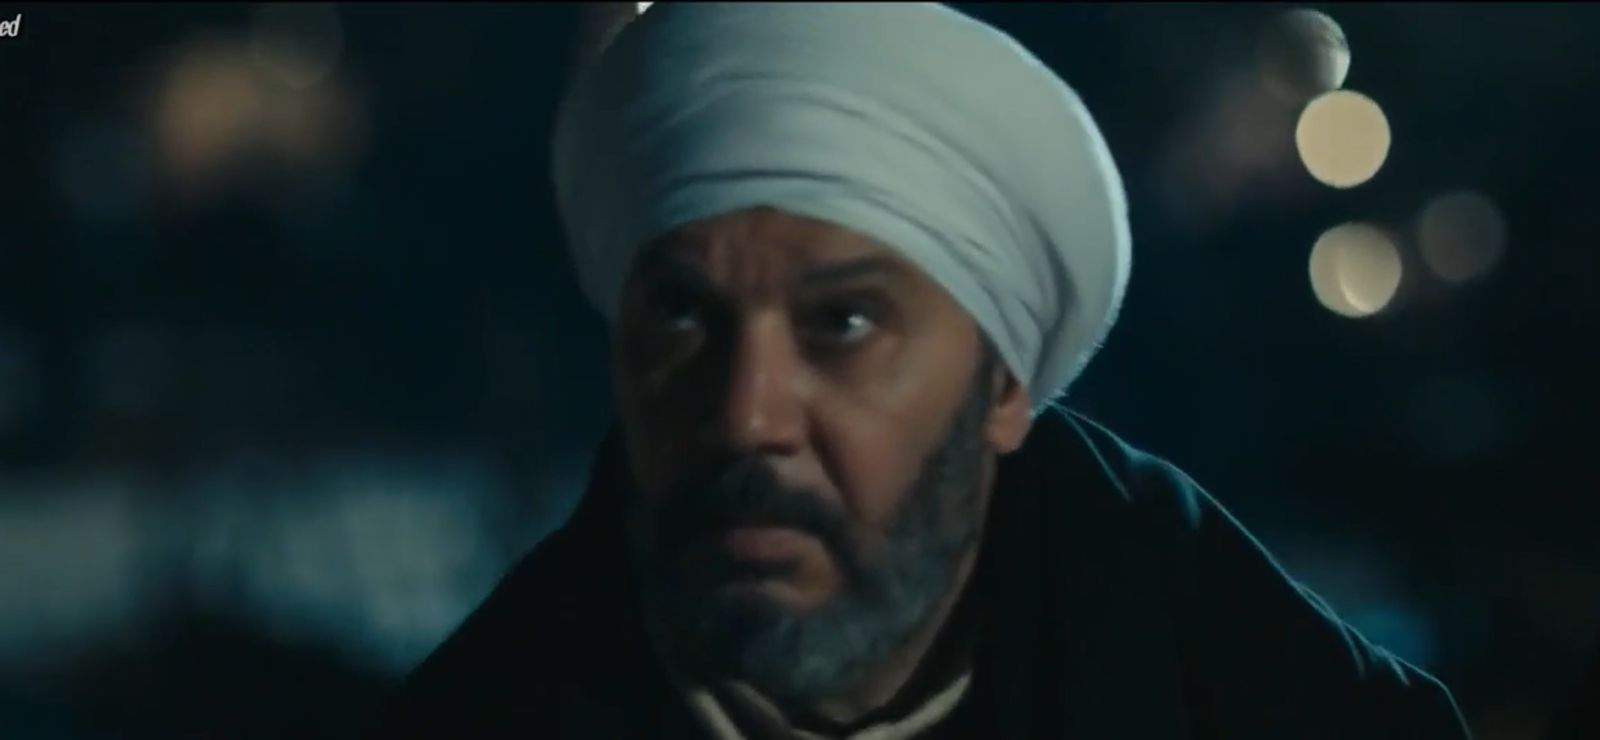 مسلسل عملة نادرة الحلقة 5  كمال أبو رية يتفاجأ بوجود نيللي كريم في منزله (3)